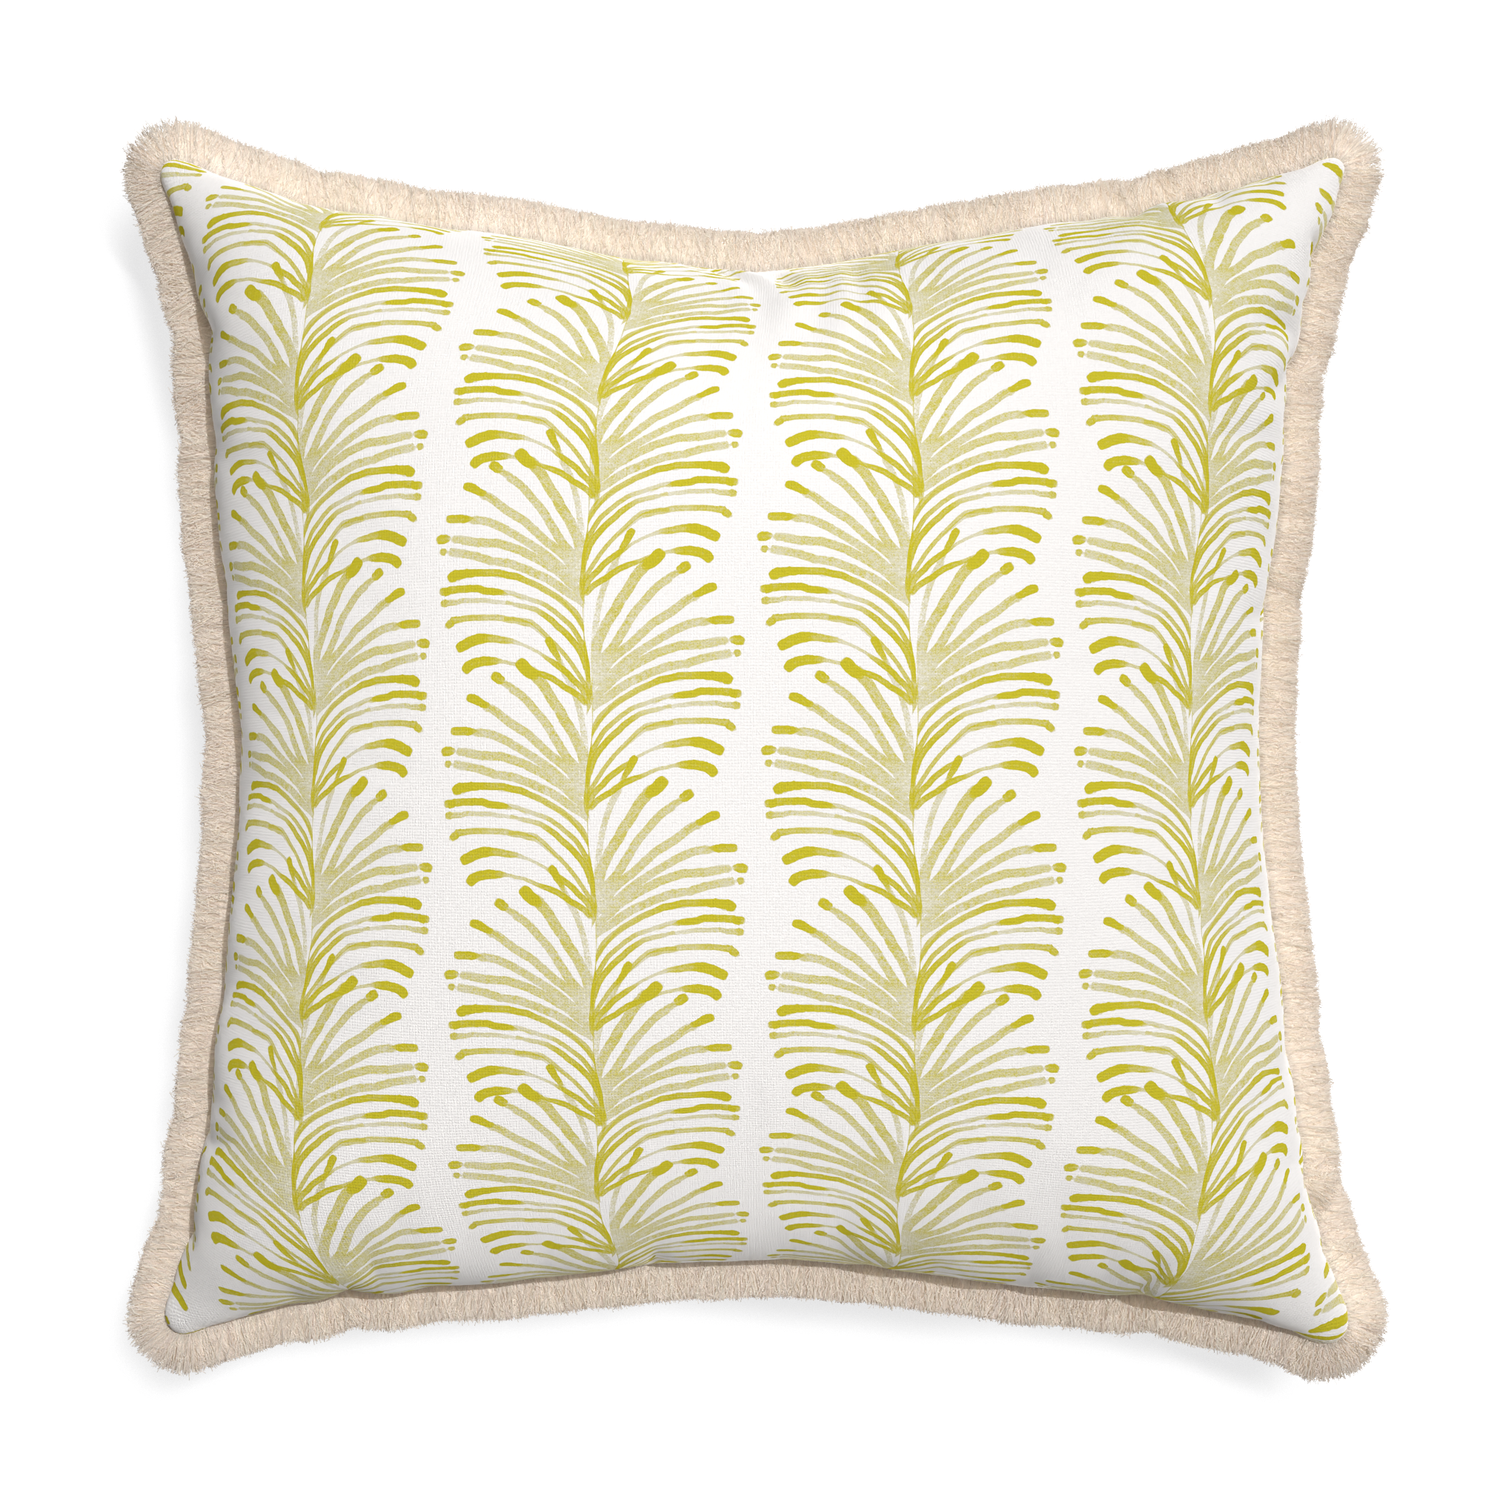 Euro-sham emma chartreuse custom pillow with cream fringe on white background